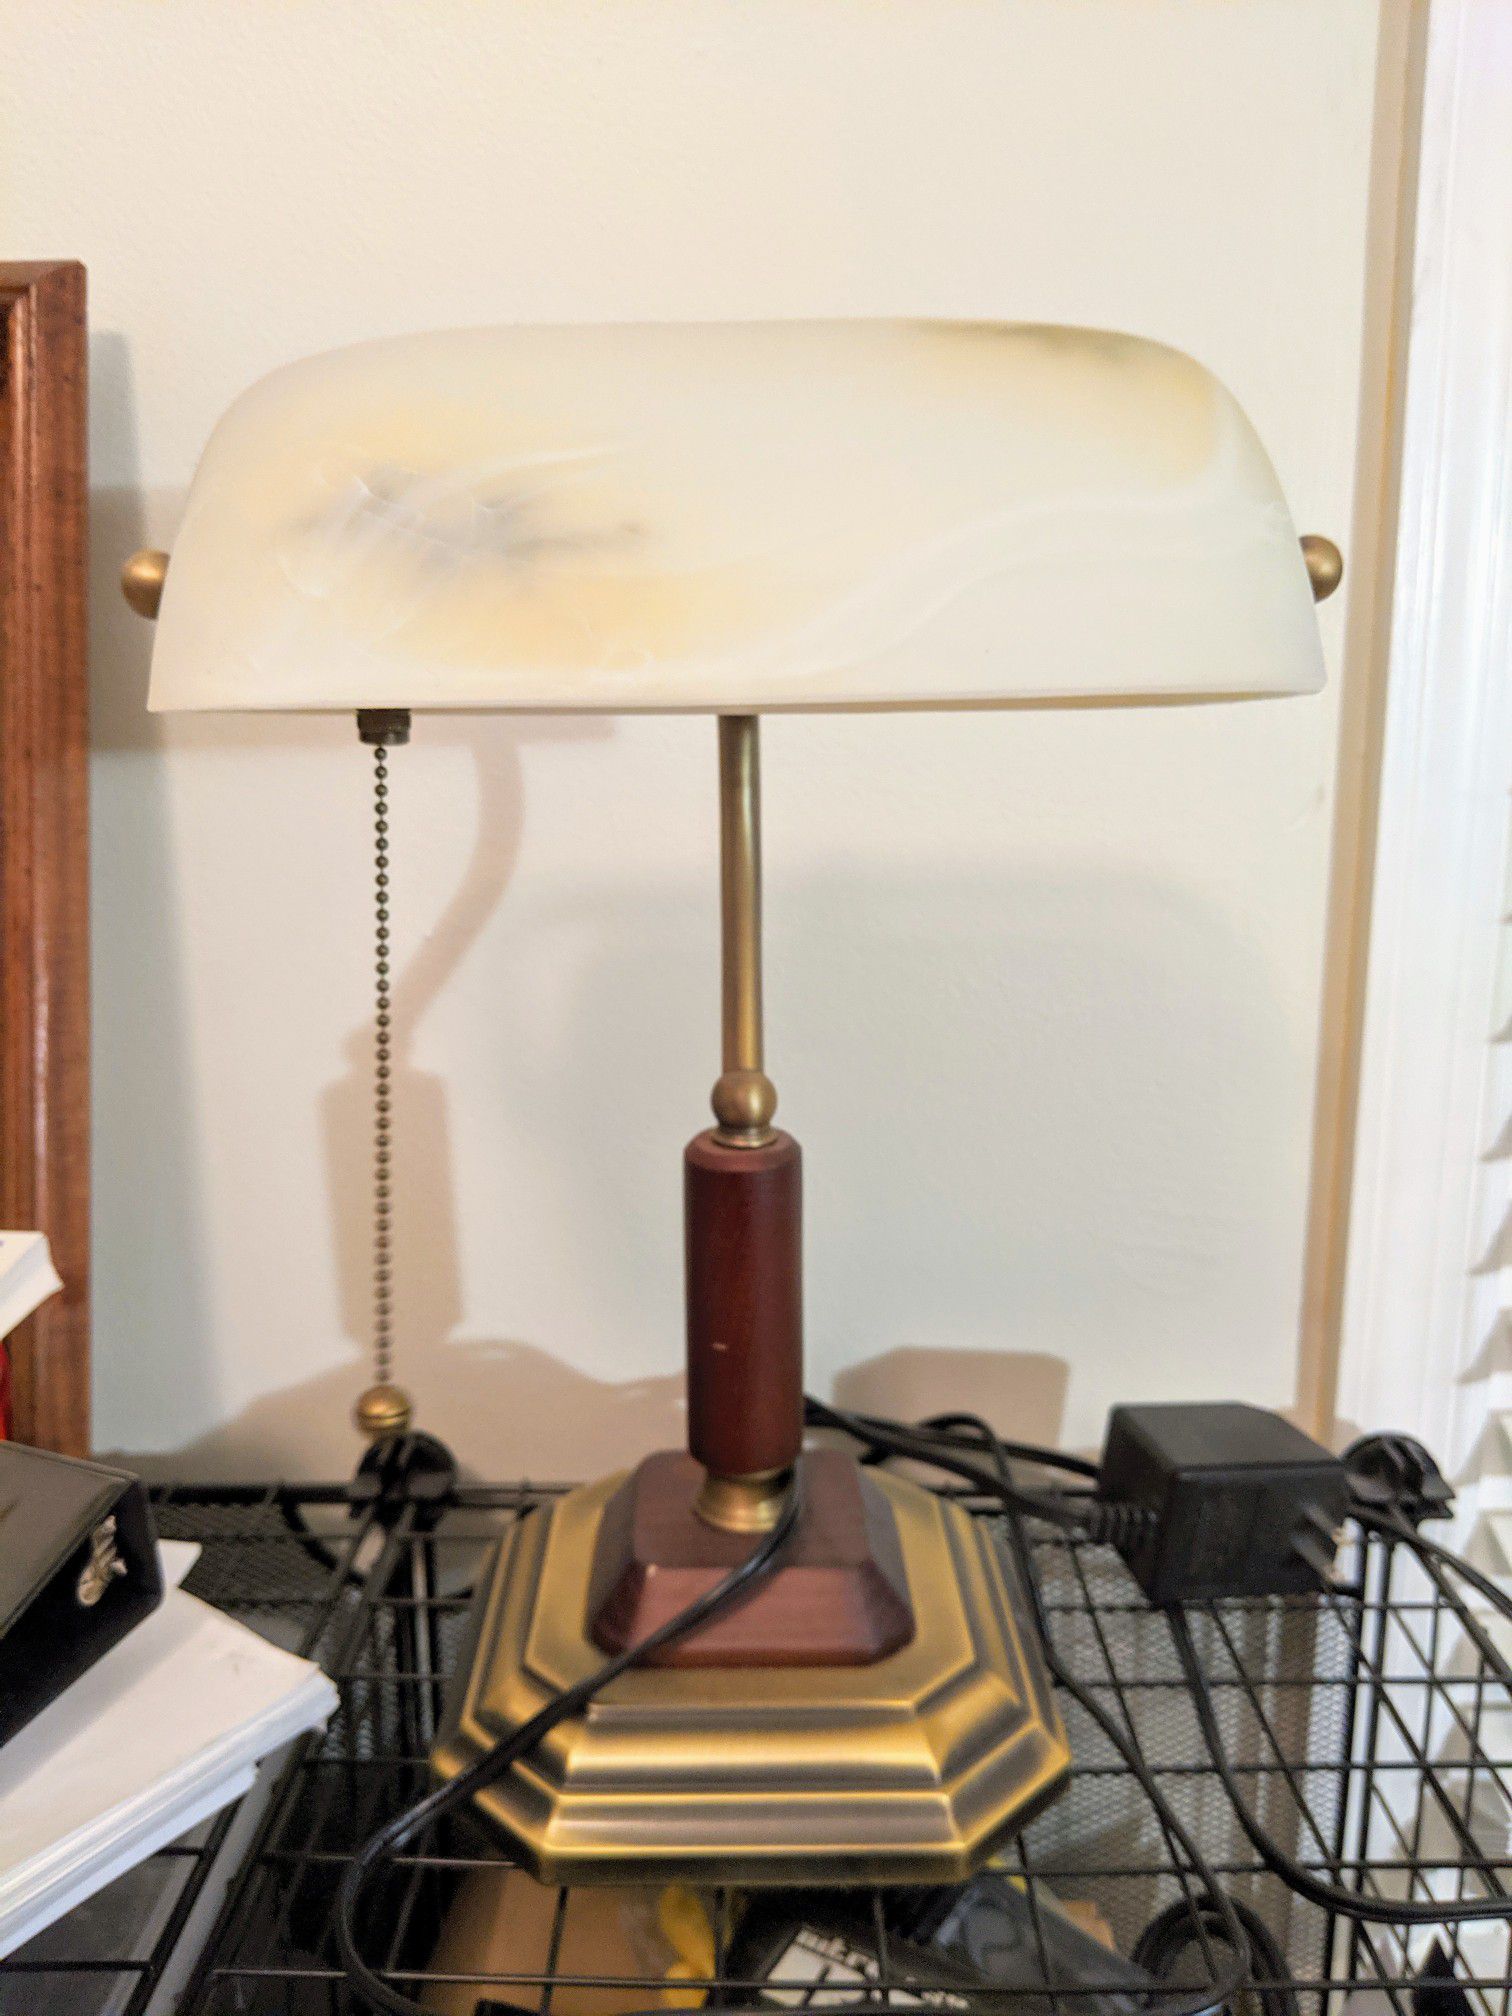 Ottlite executive desk lamp